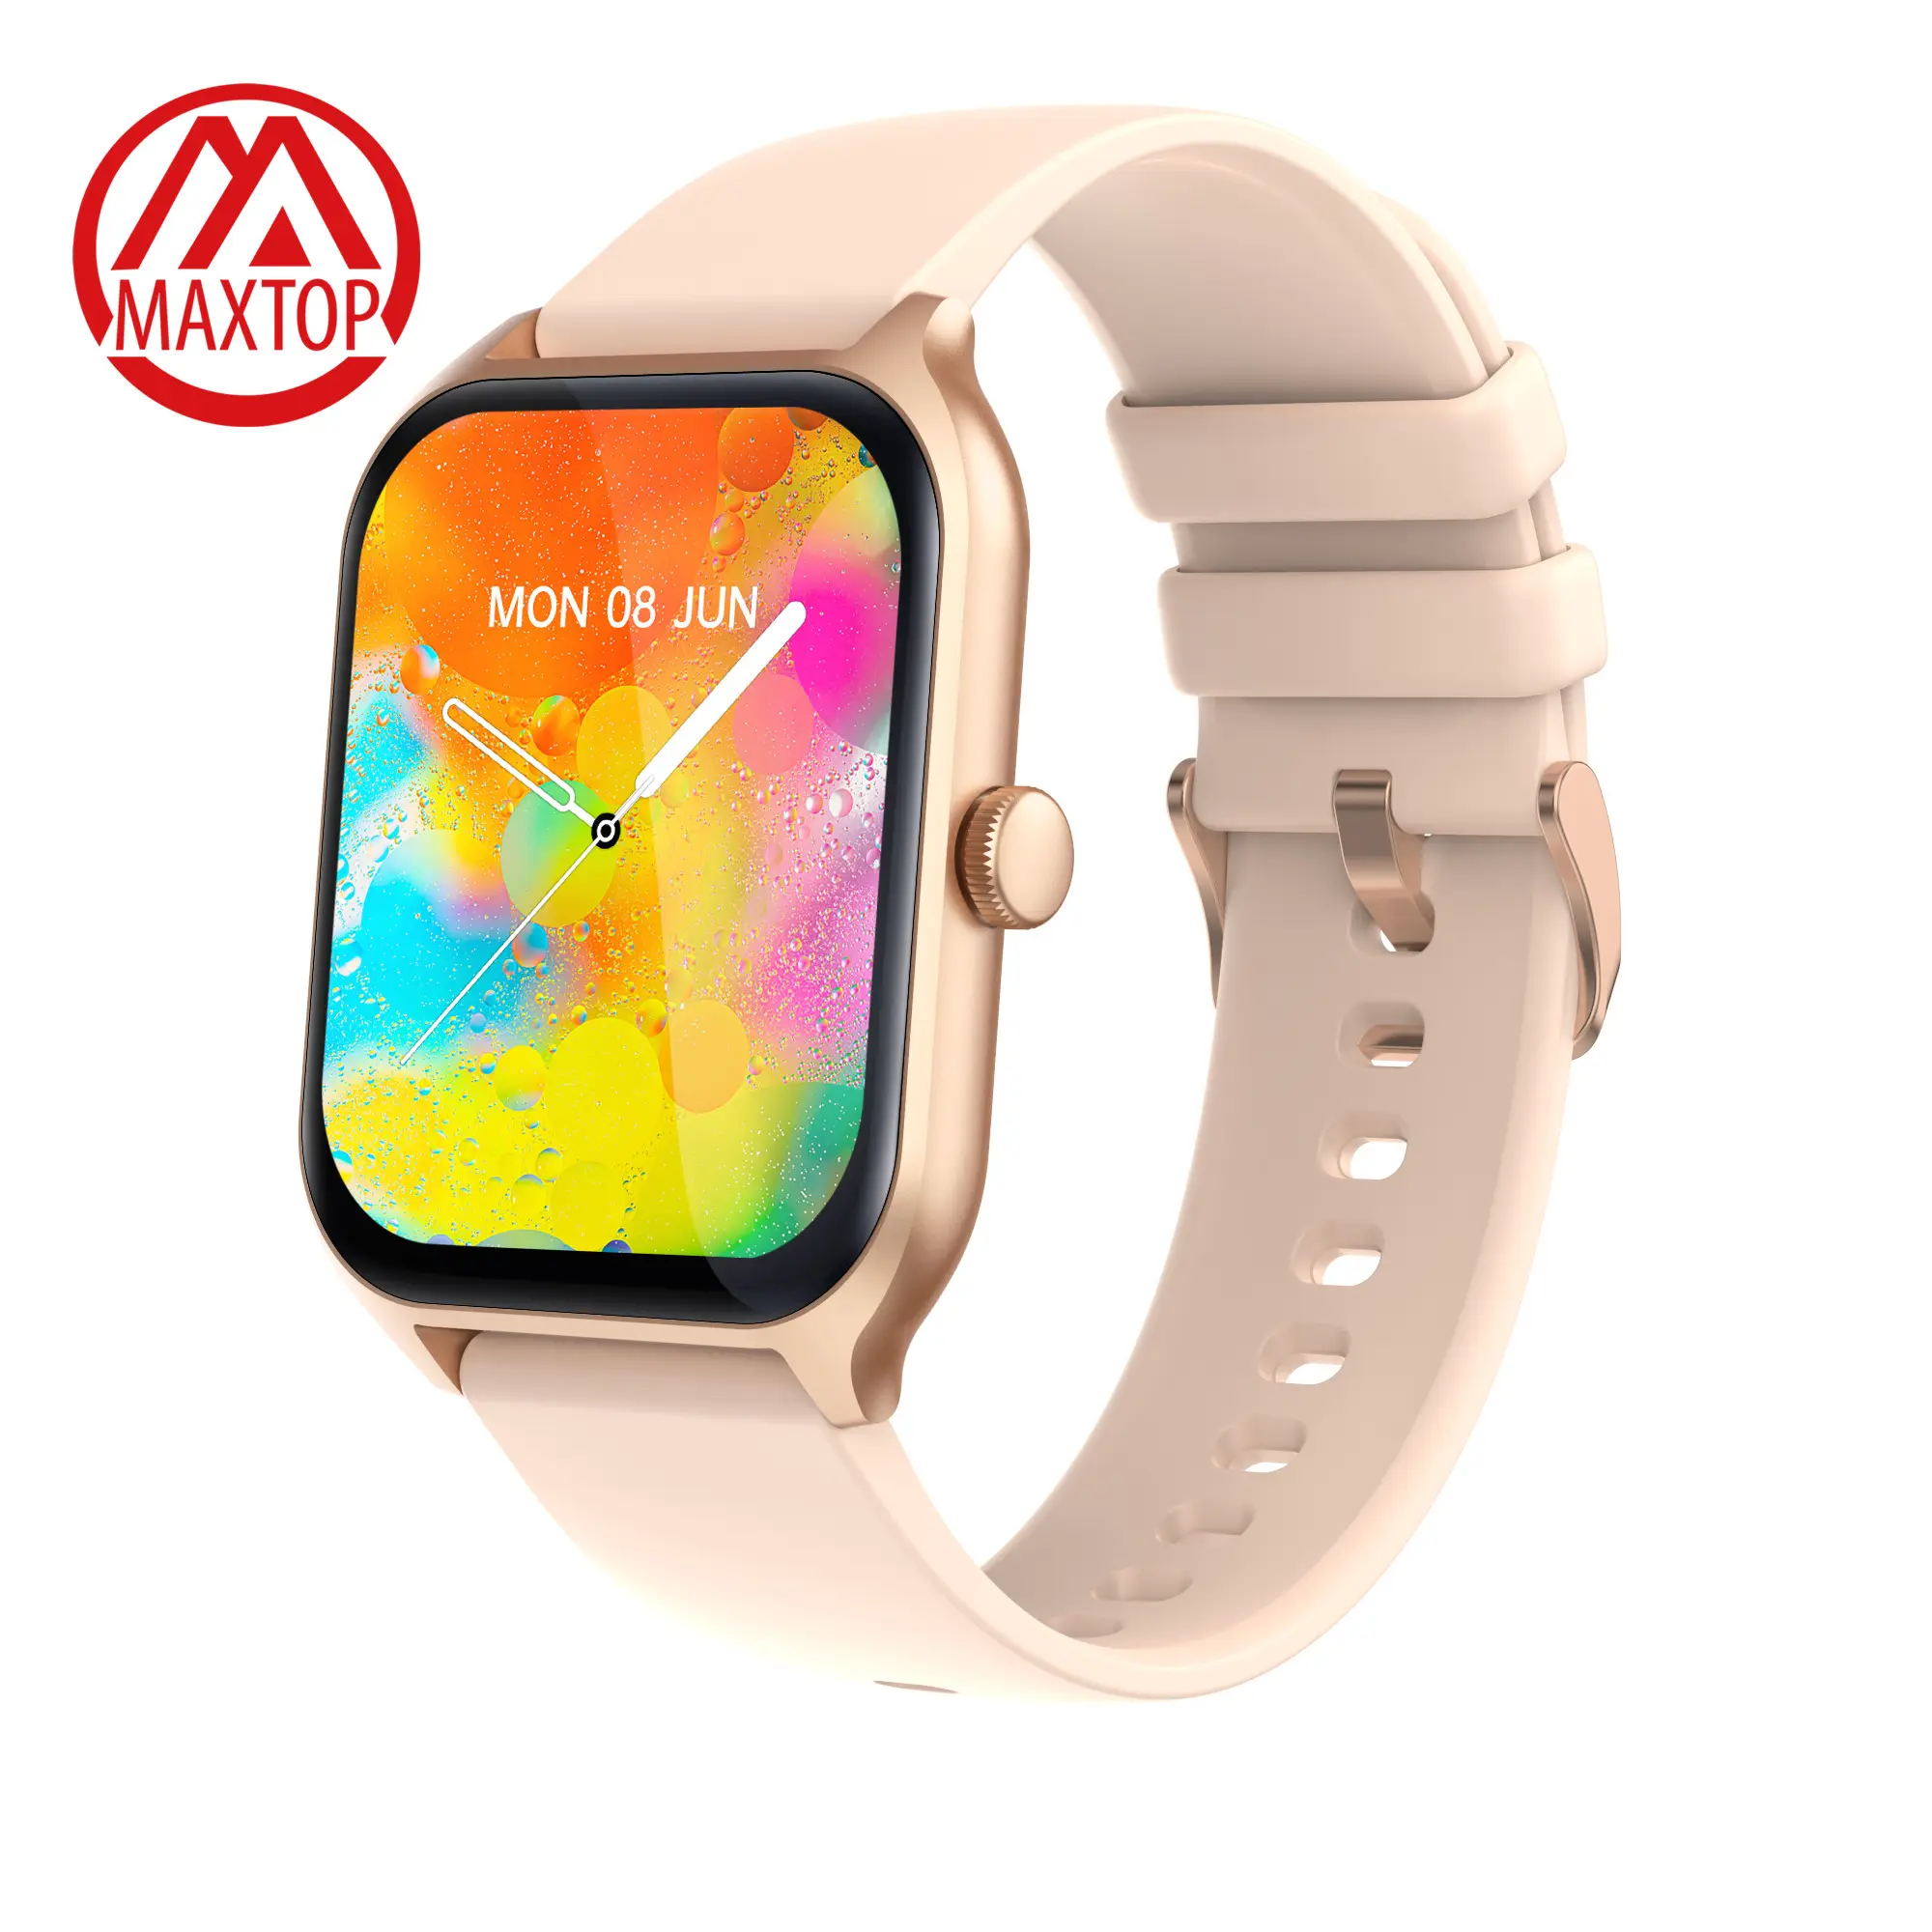 Maxtop venta al por mayor Gran venta de reloj inteligente regalo niños niñas pulsera teléfonos móviles Fitness Tracker Smartwatch